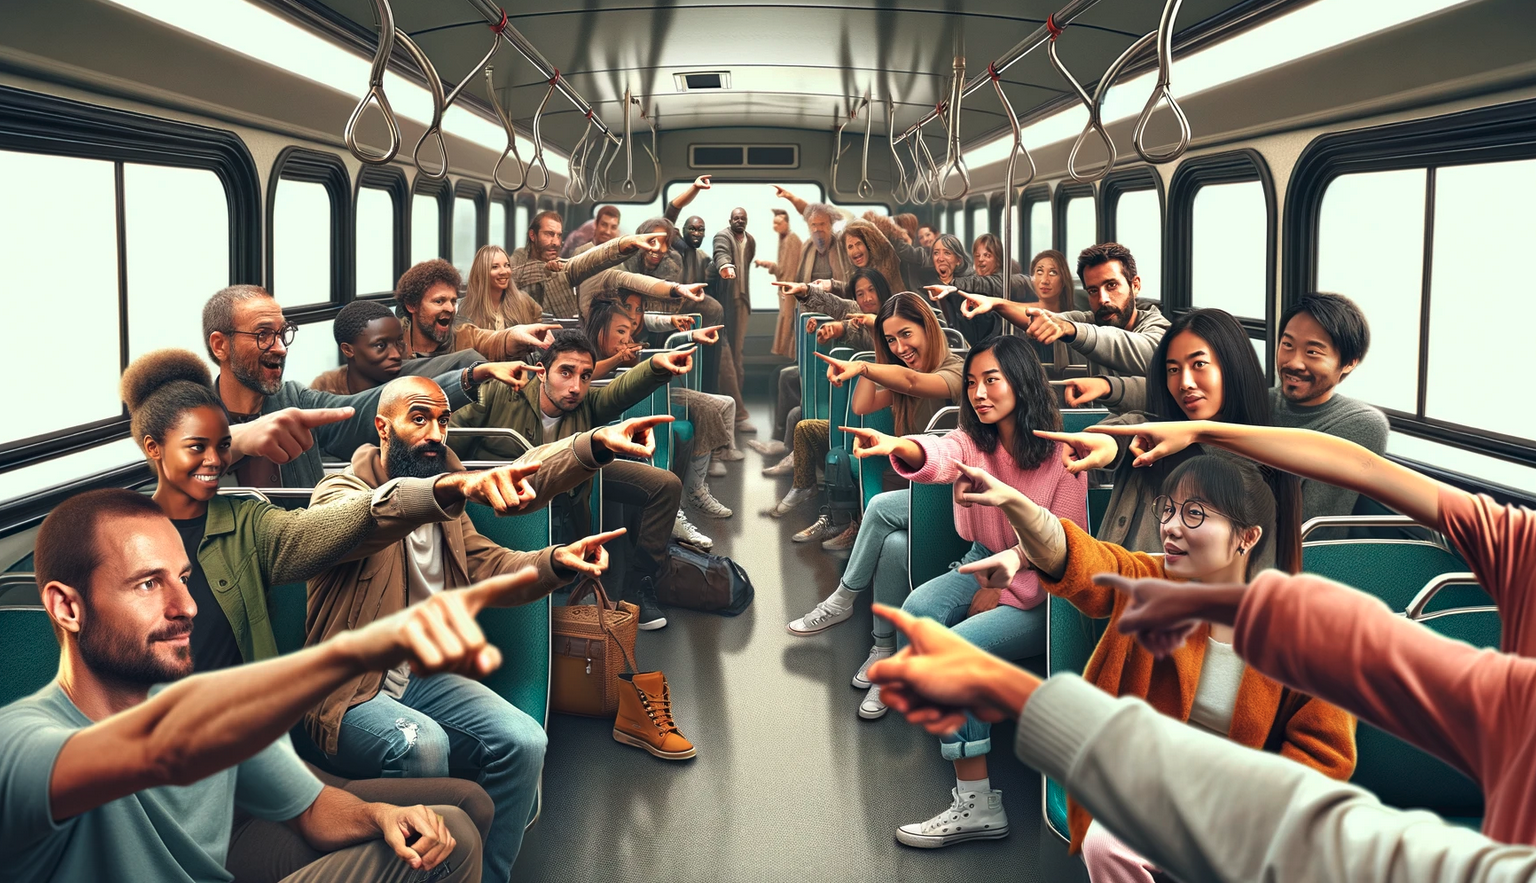 linkowanie wewnętrzne - ludzie wskazujący na siebie w autobusie